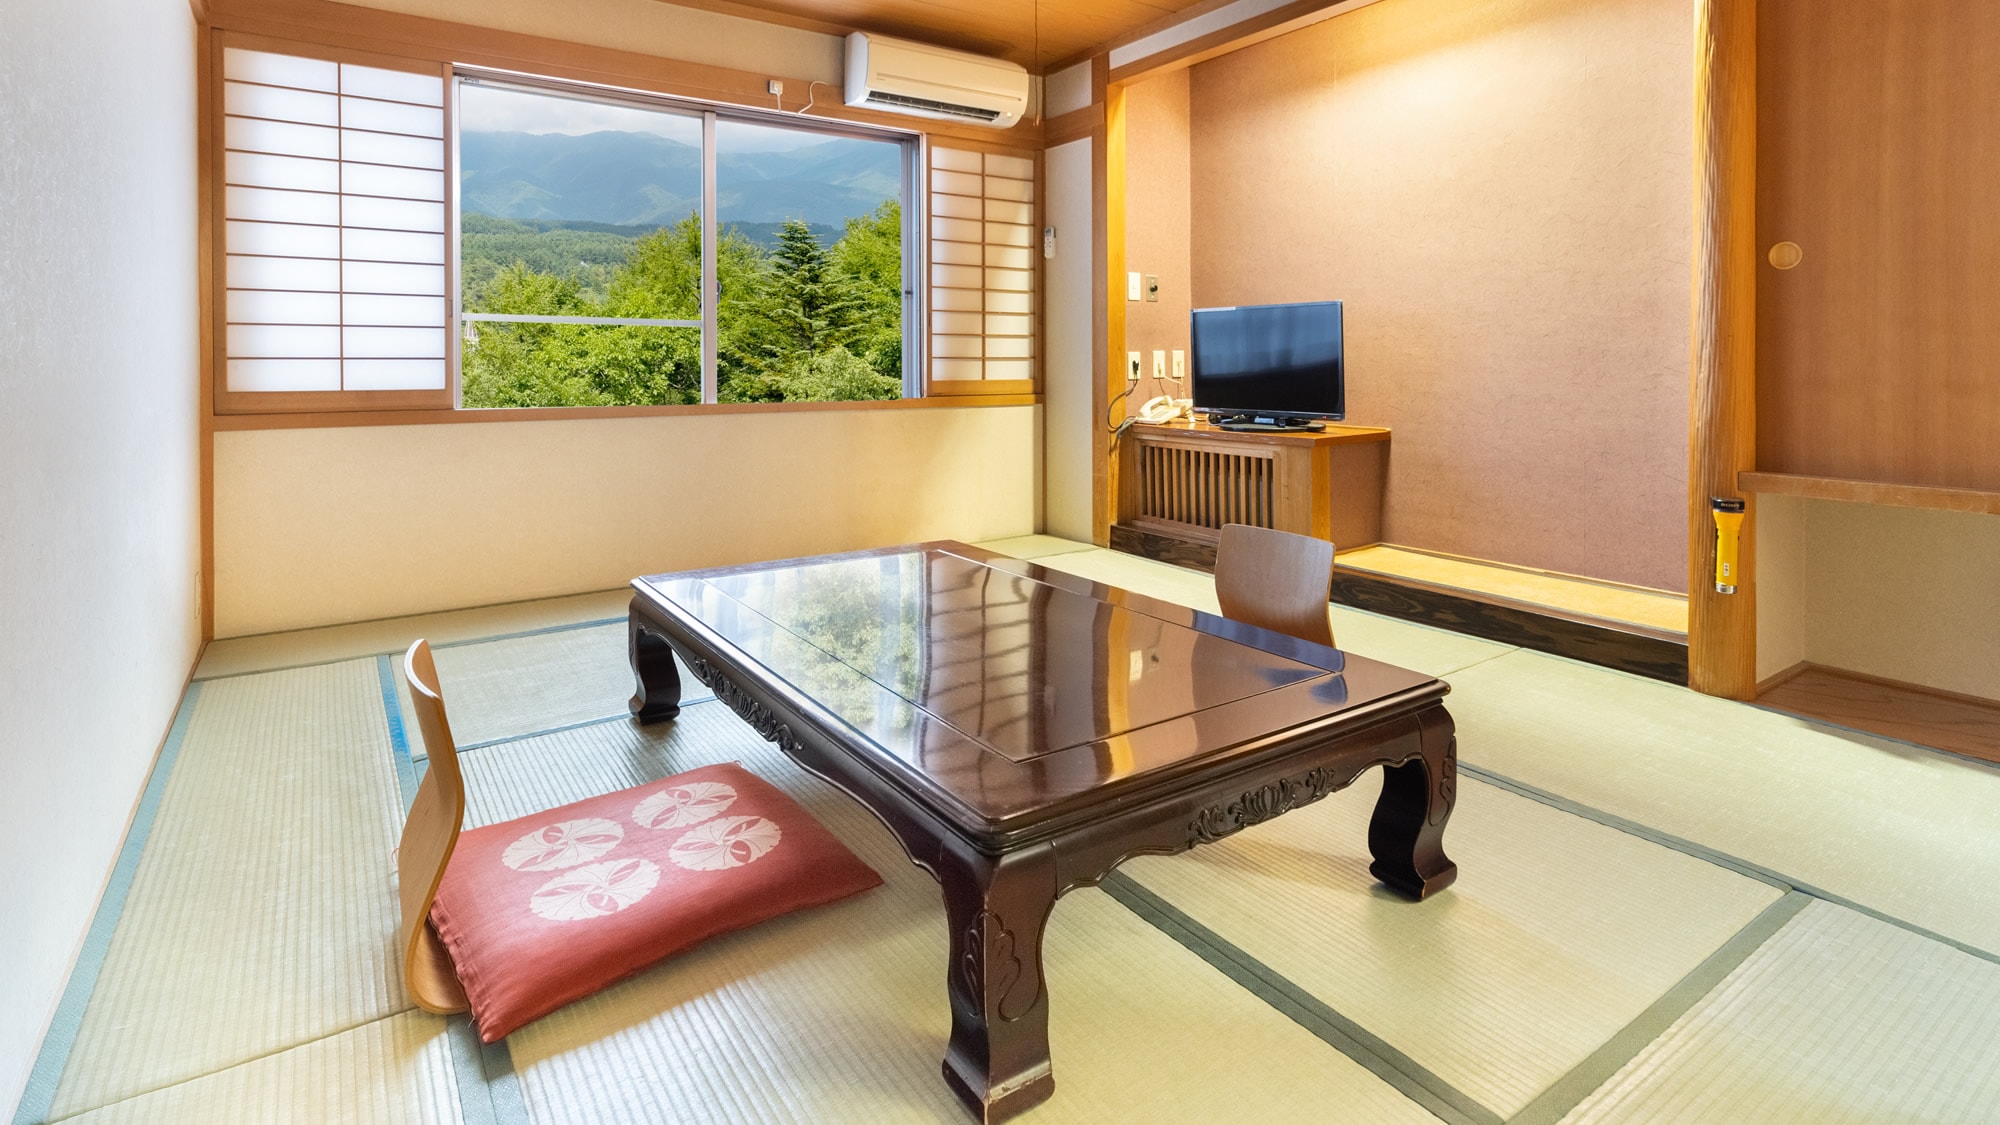 [ห้องสไตล์ญี่ปุ่น 10 เสื่อทาทามิ + 8 เสื่อทาทามิ] ห้องที่มีห้องสไตล์ญี่ปุ่นอิสระสองห้อง